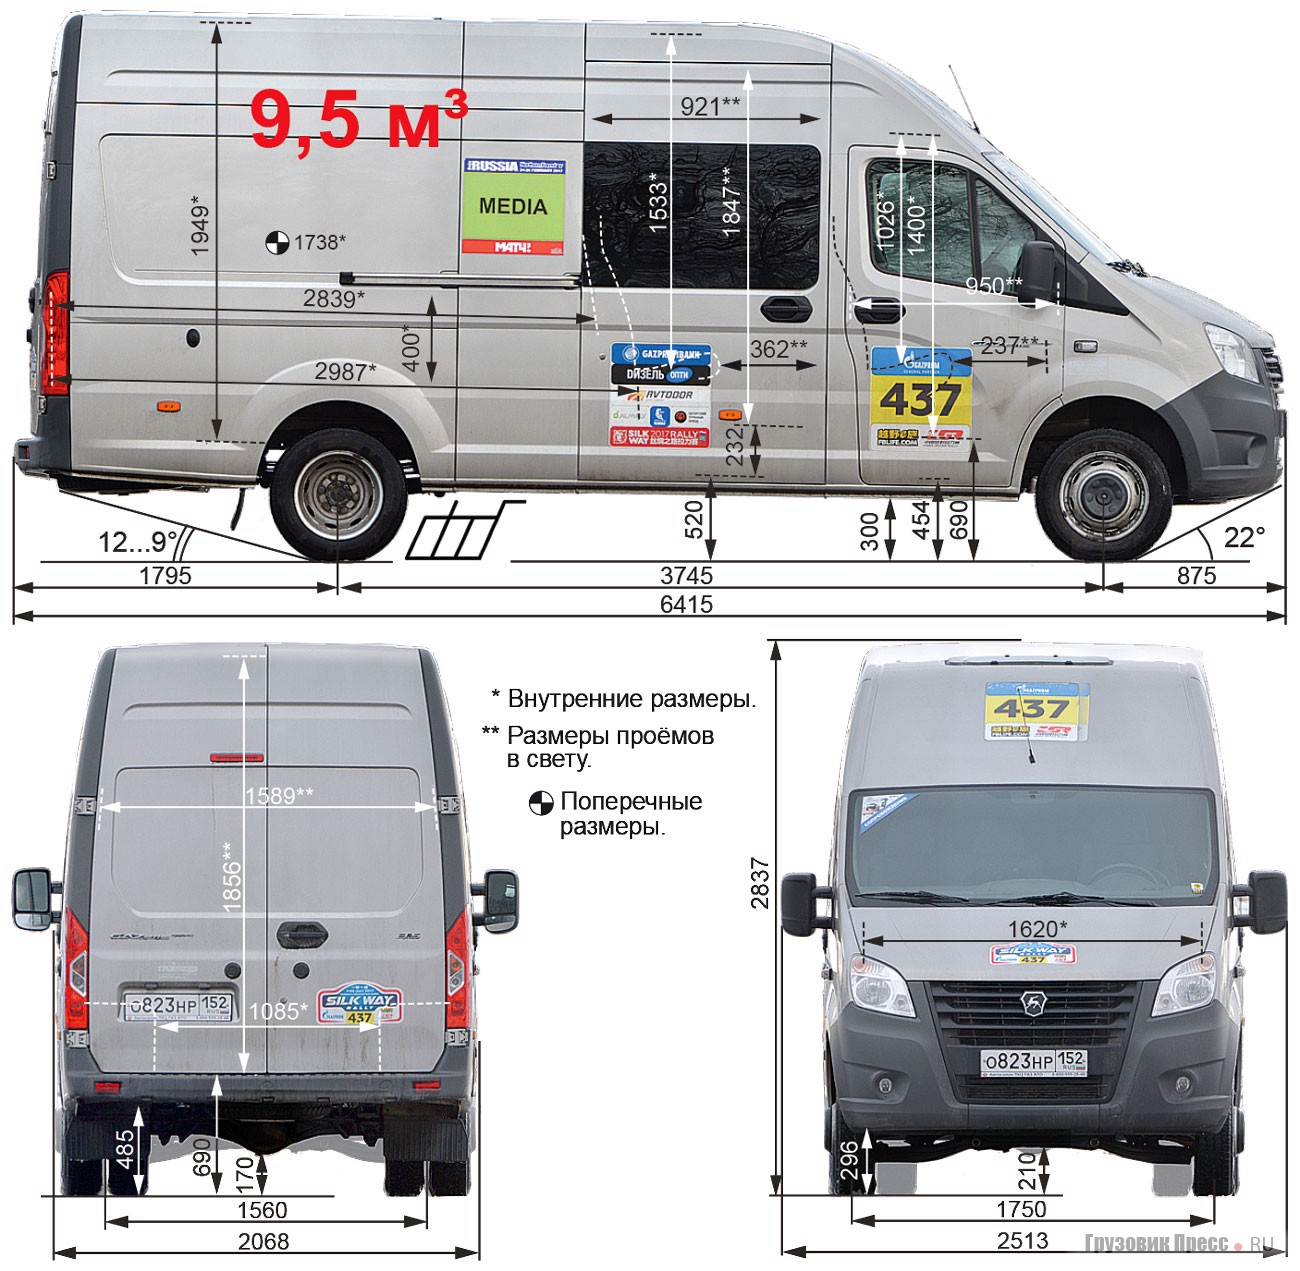 Автобус газель next: технические характеристики и расход топлива с фото и видео примерами